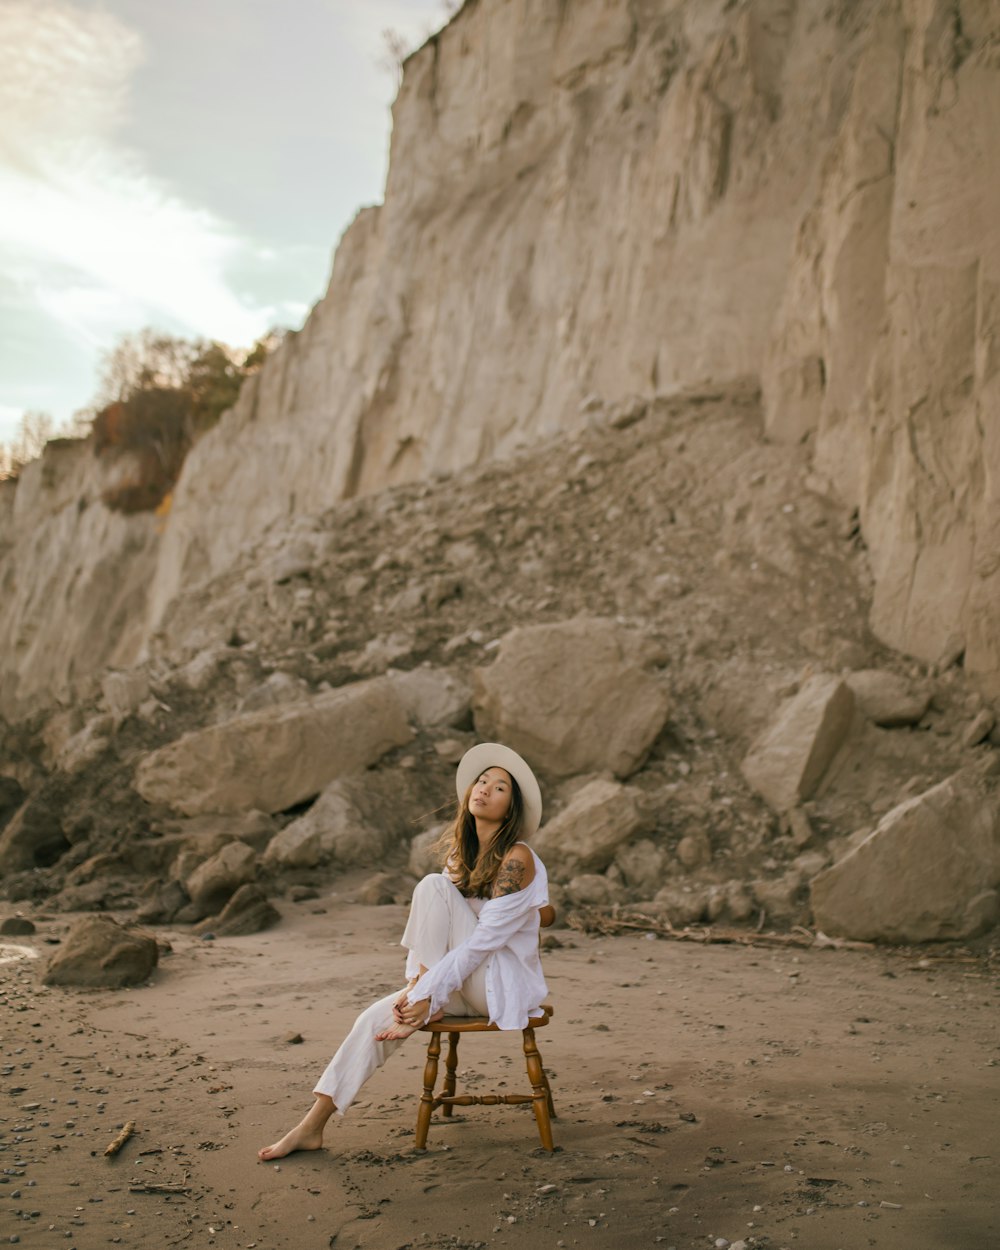 ビーチの木製の椅子の上に座っている女性